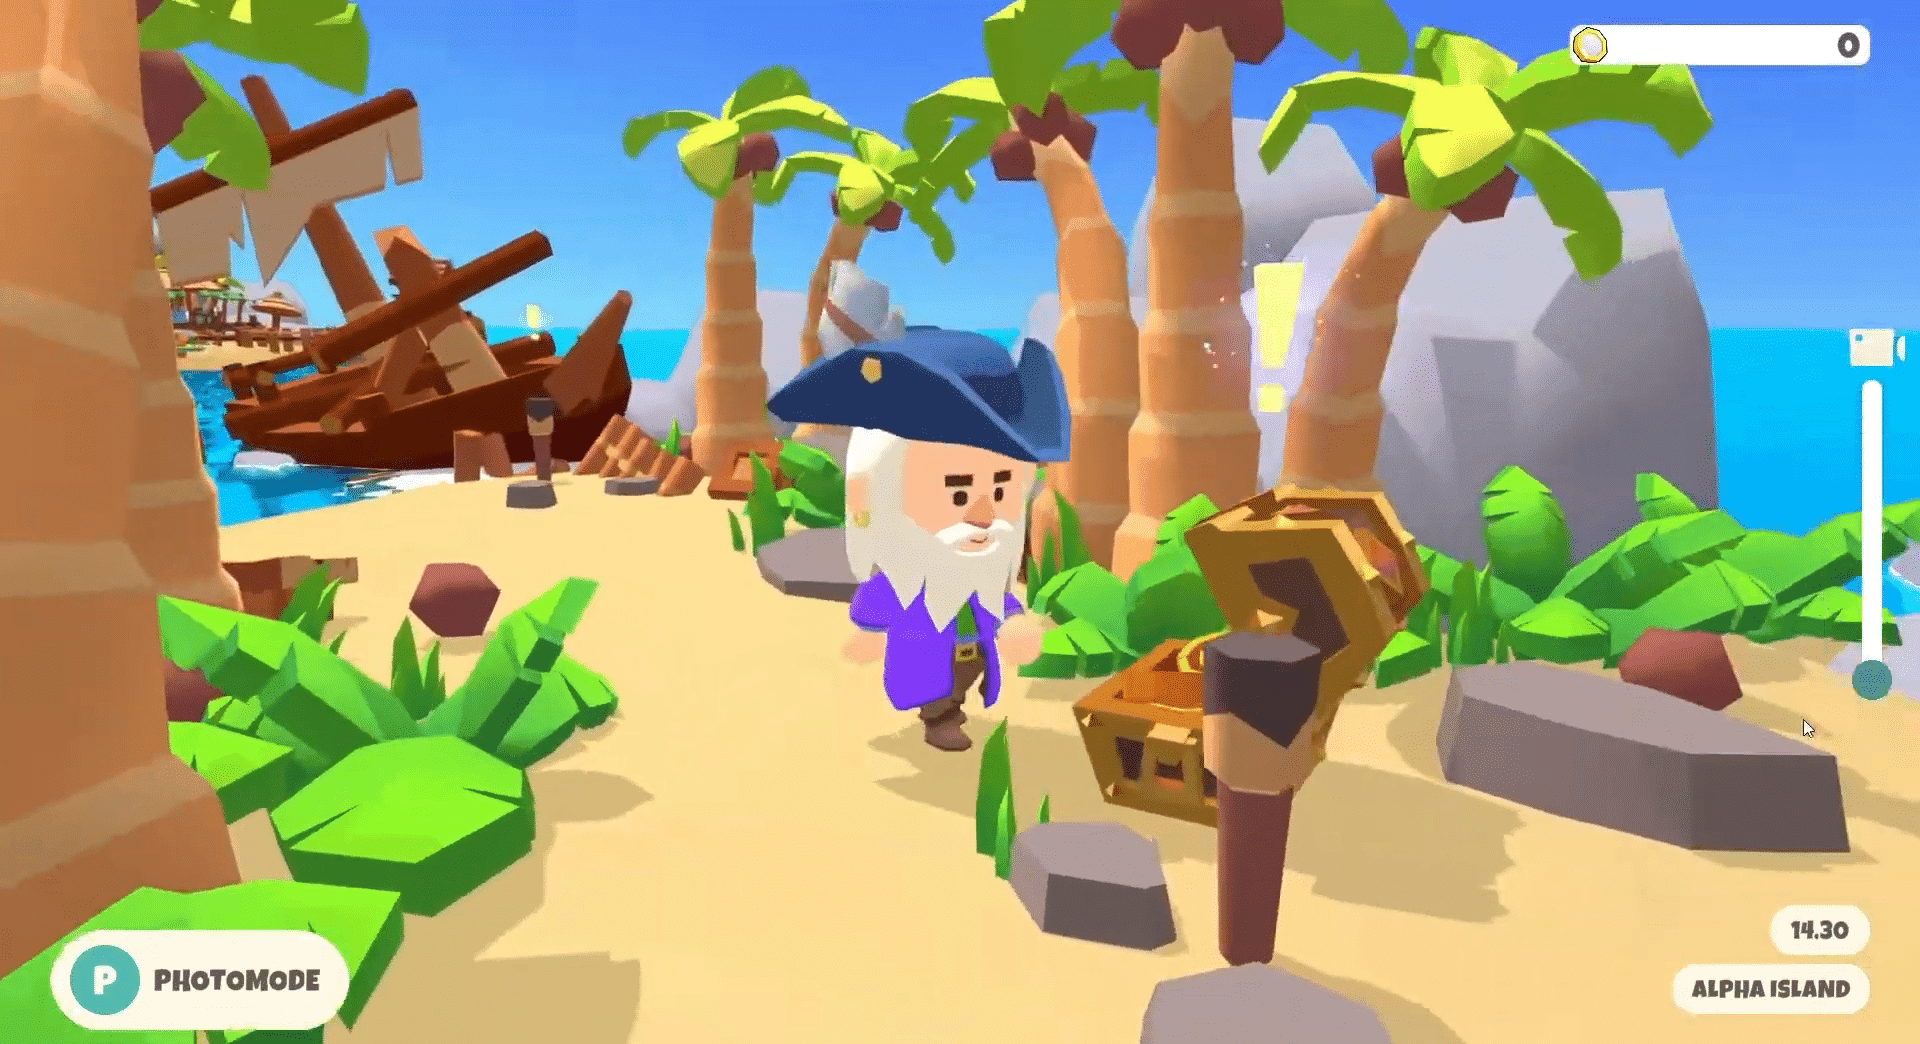 Paradise Tycoon - Harvest Season biedt een rustige web3-game, die spelers een ontspannen en plezierig NFT-game-avontuur biedt.